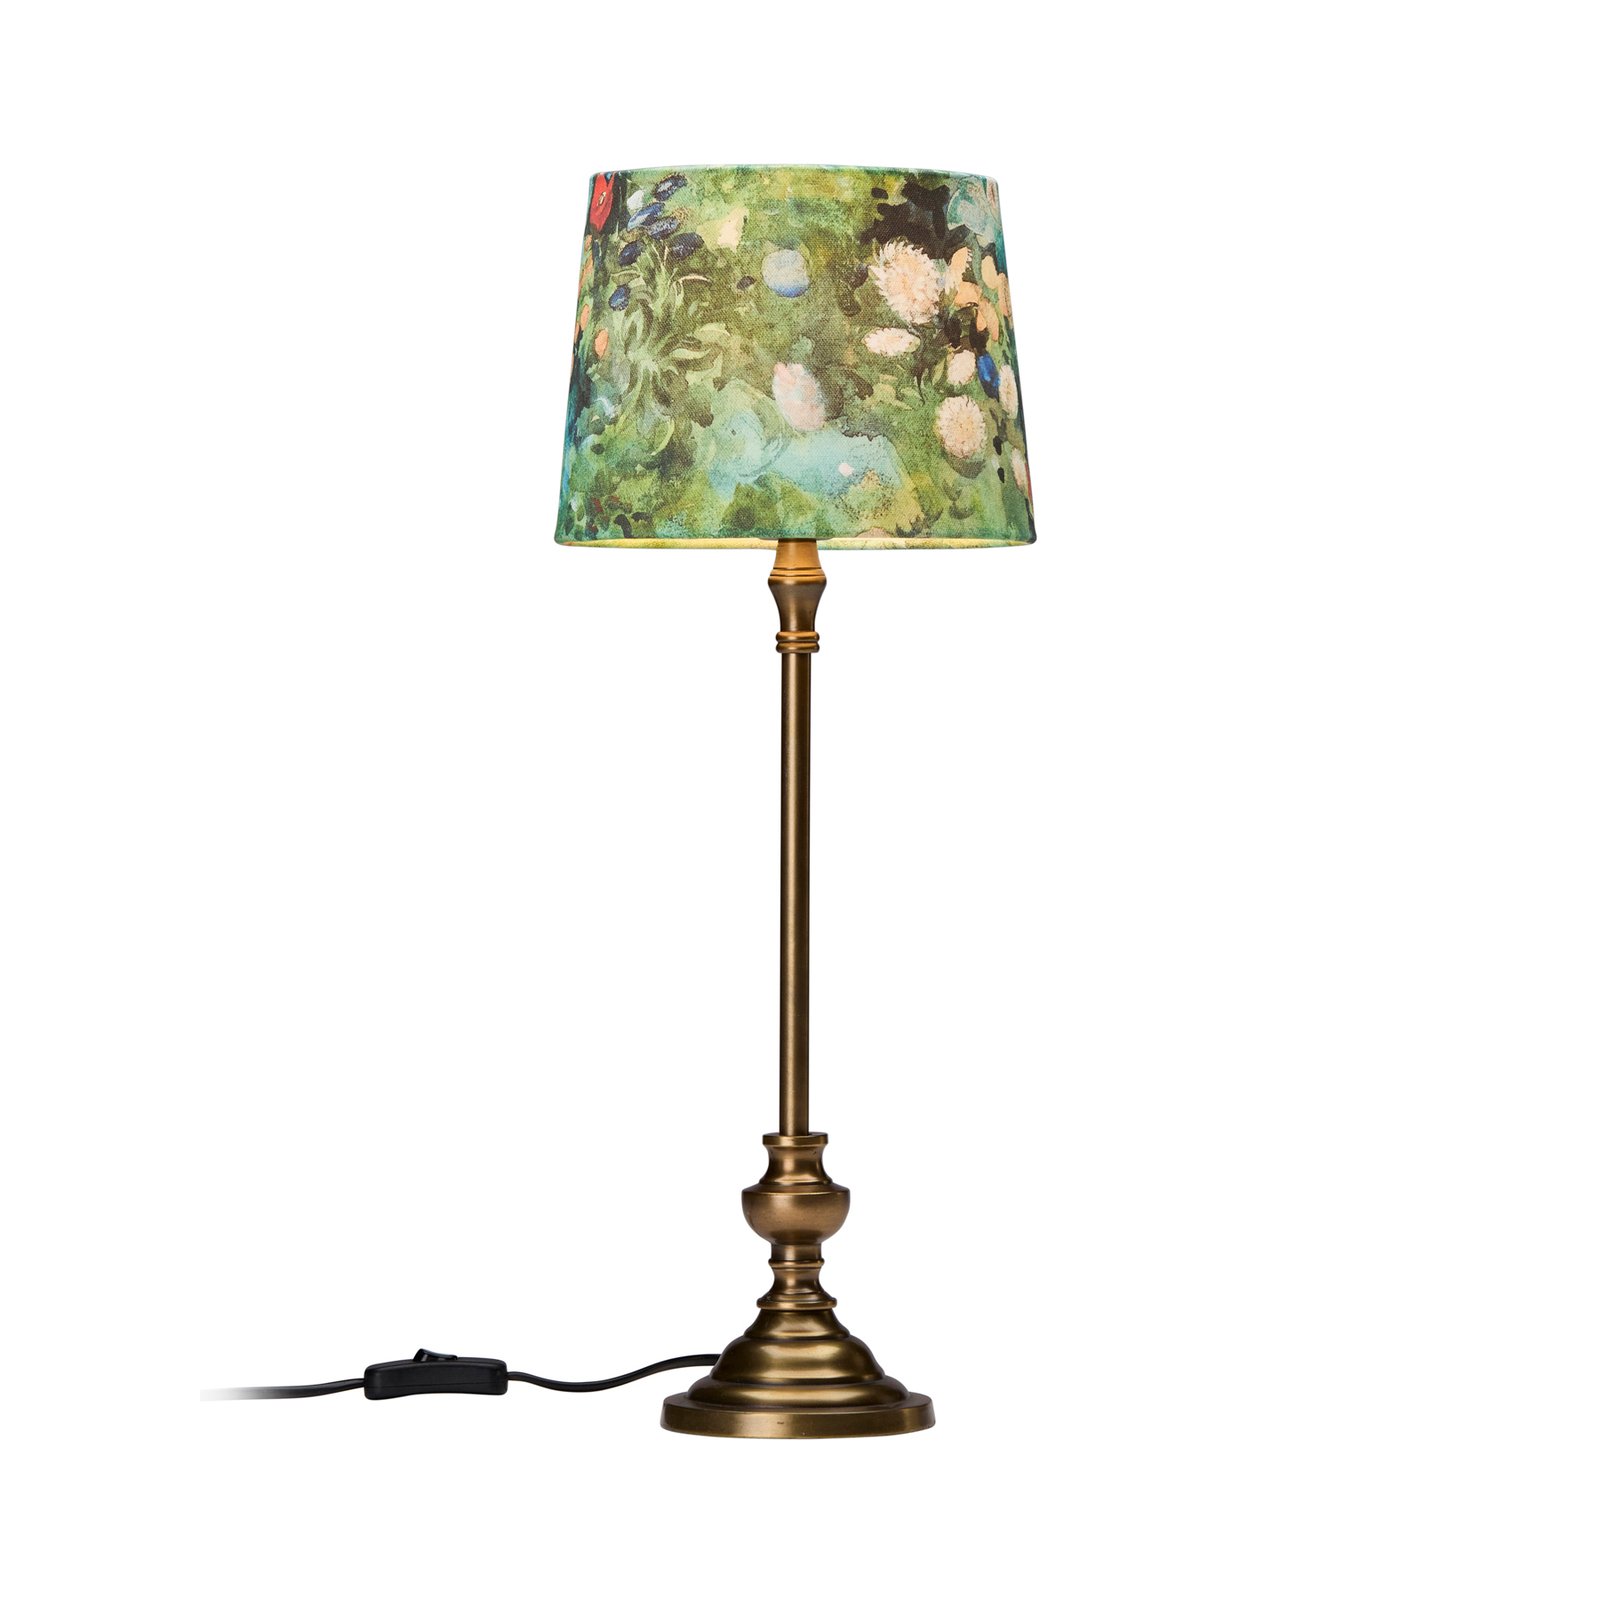 PR Home Andrea lampe de table motif laiton/vert